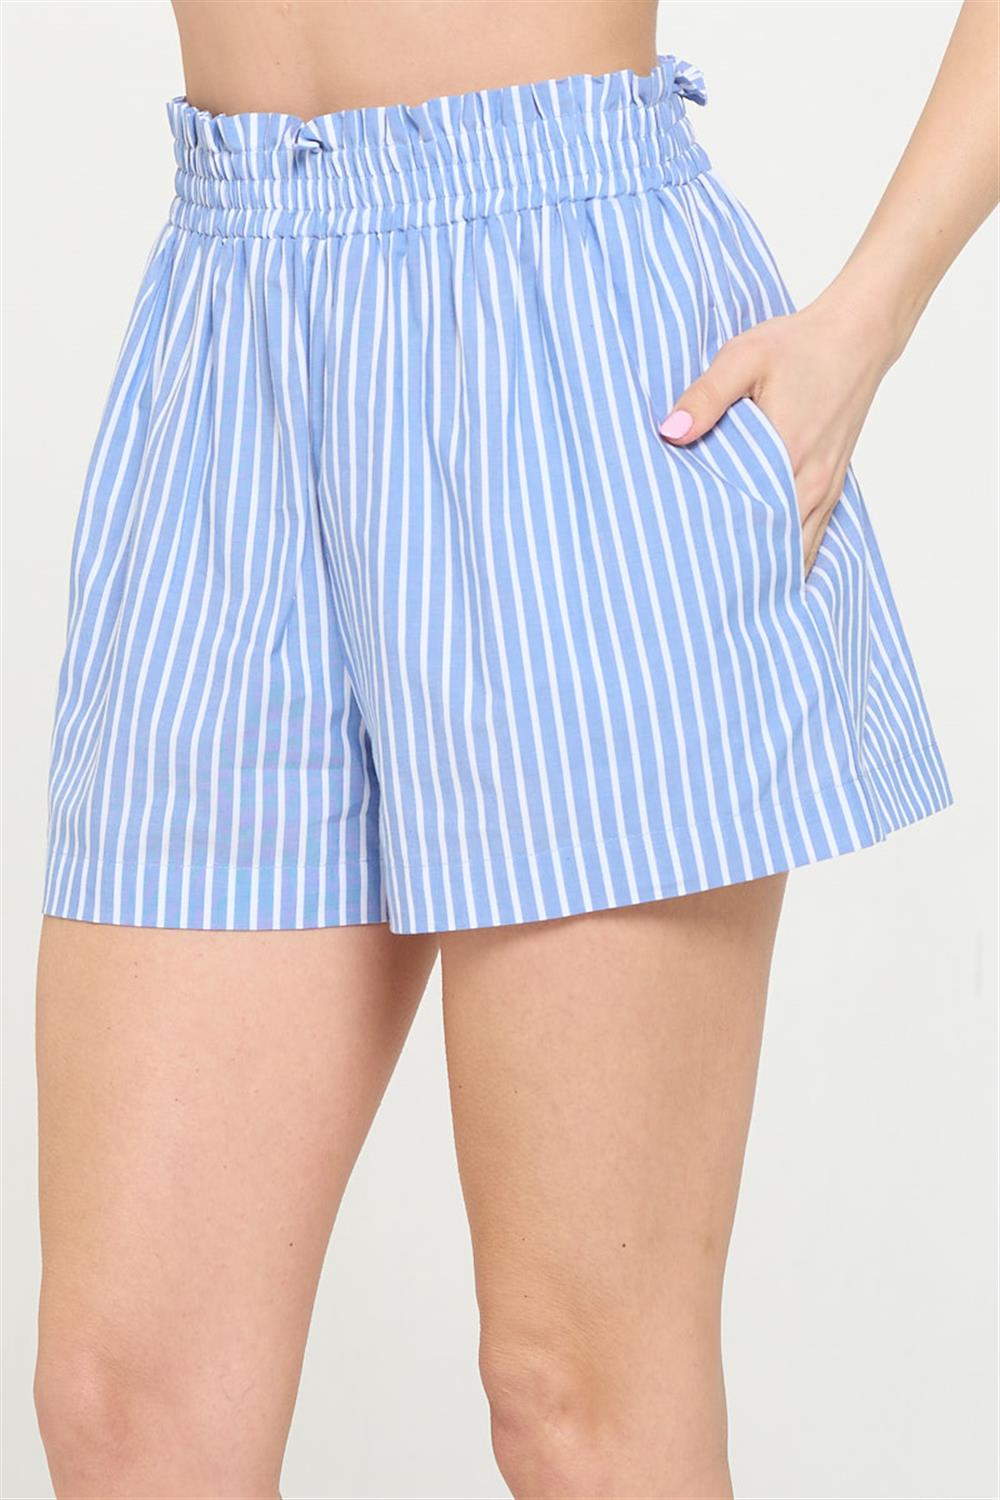 Cassie Denim Stripe Shorts